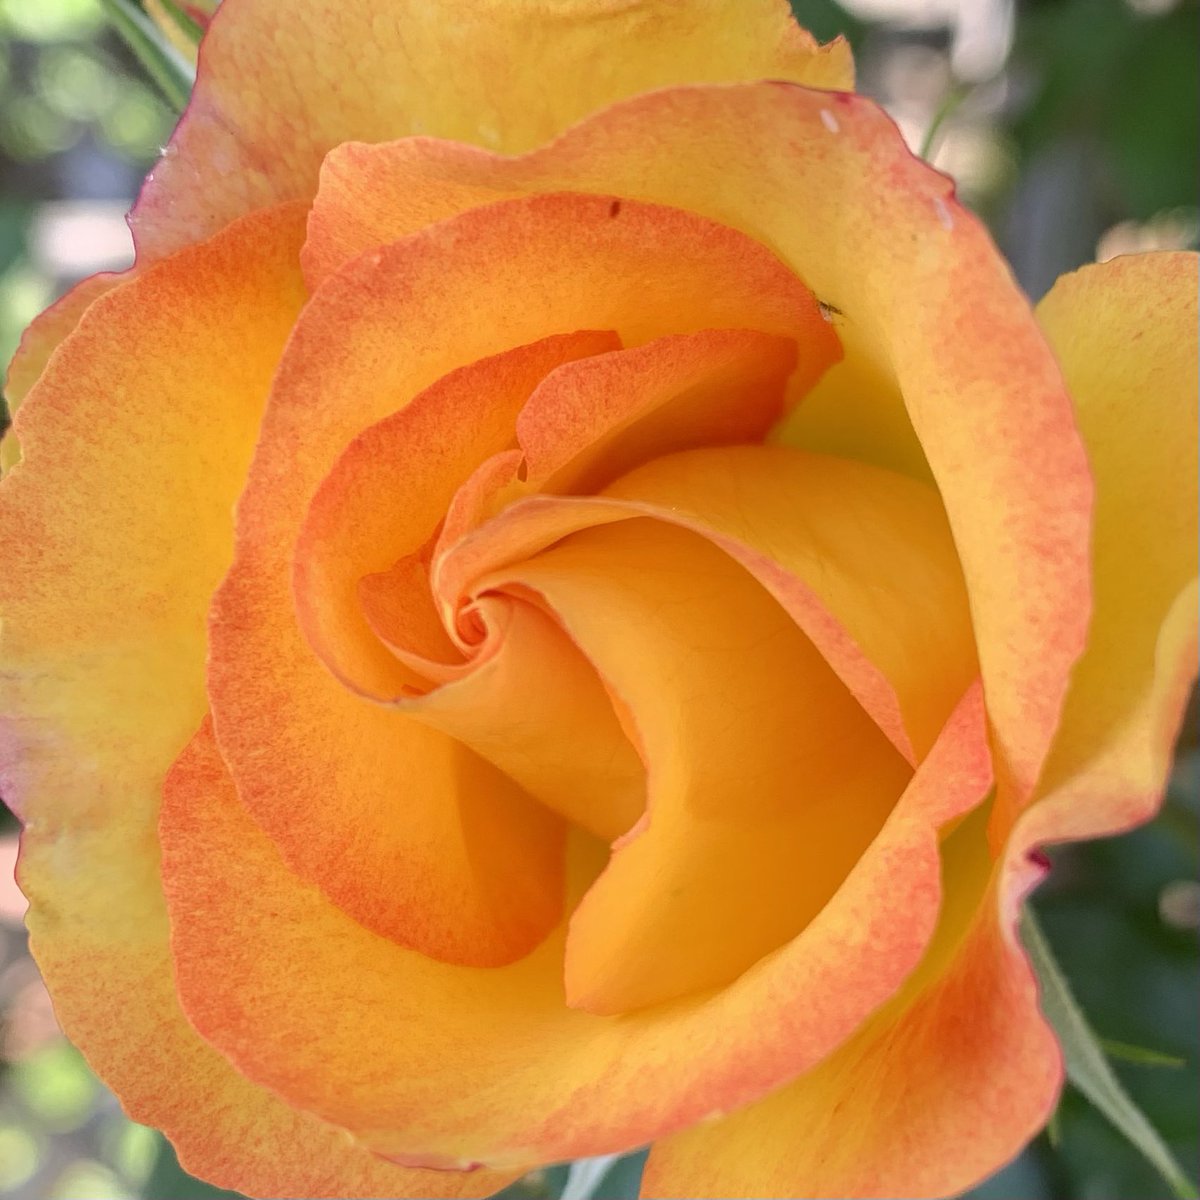 おはよう御座います(*´▽｀)ﾉﾉ 🌸🌸🌸花の便り🌸🌸🌸 オレンジ色のバラの花言葉は【愛嬌・絆・信頼】です。両親や兄弟に贈る花として人気が高いようです